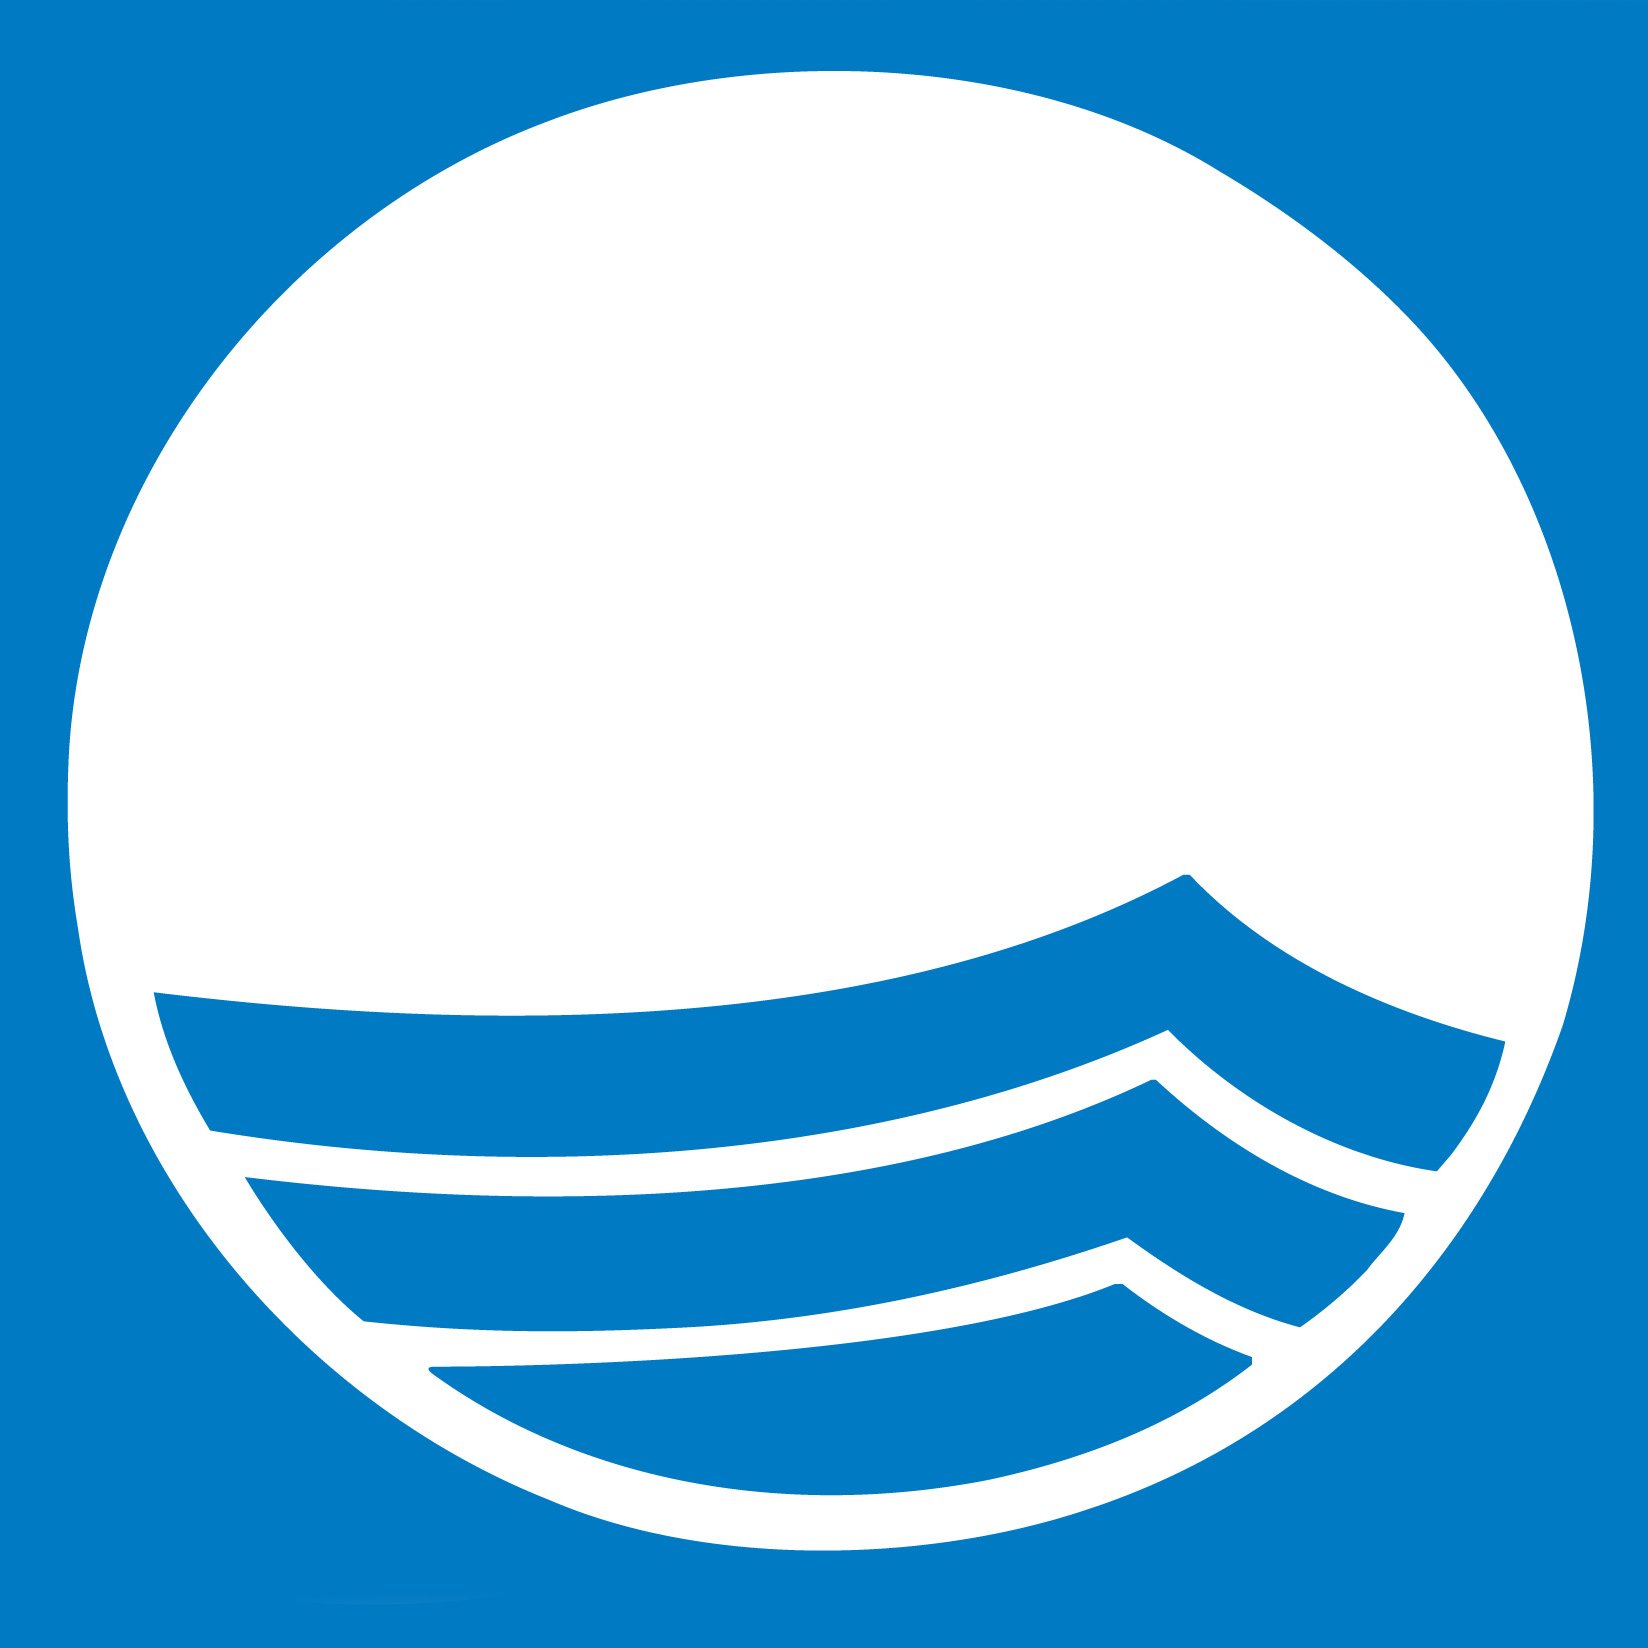 ACODAL- Colombia 🇨🇴
Blue Flag promueve la educación ambiental y la gestión sostenible de playas, marinas y barcos eco-turísticos🌊☀️💙